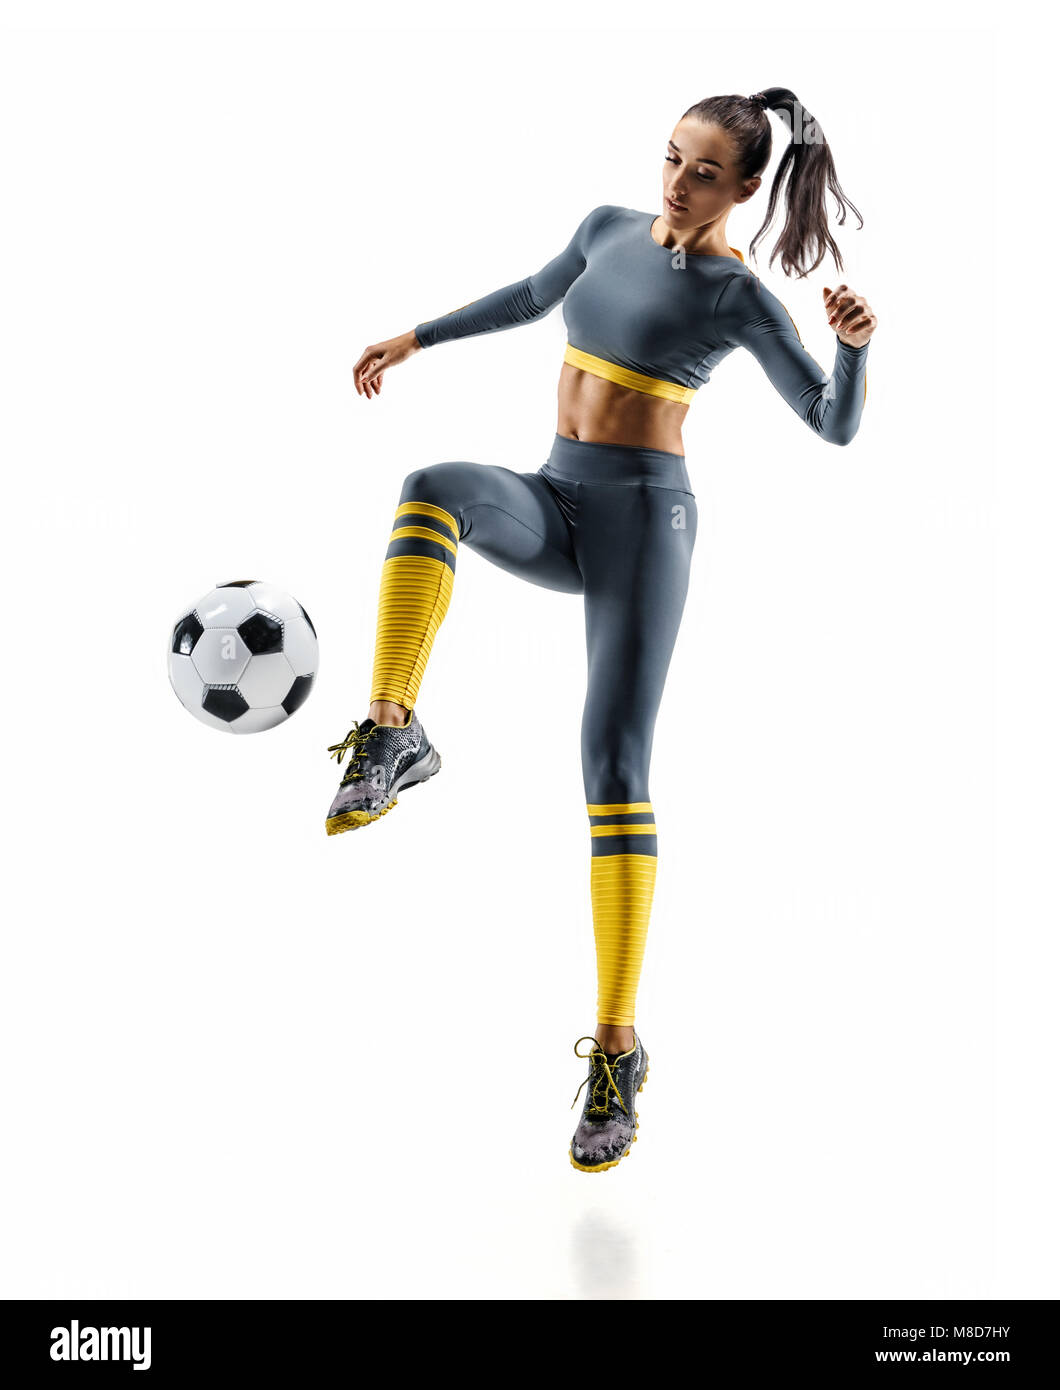 Football Soccer player in azione. Foto di donna sportiva in sportswear isolato sullo sfondo bianco. Movimento dinamico. Foto Stock